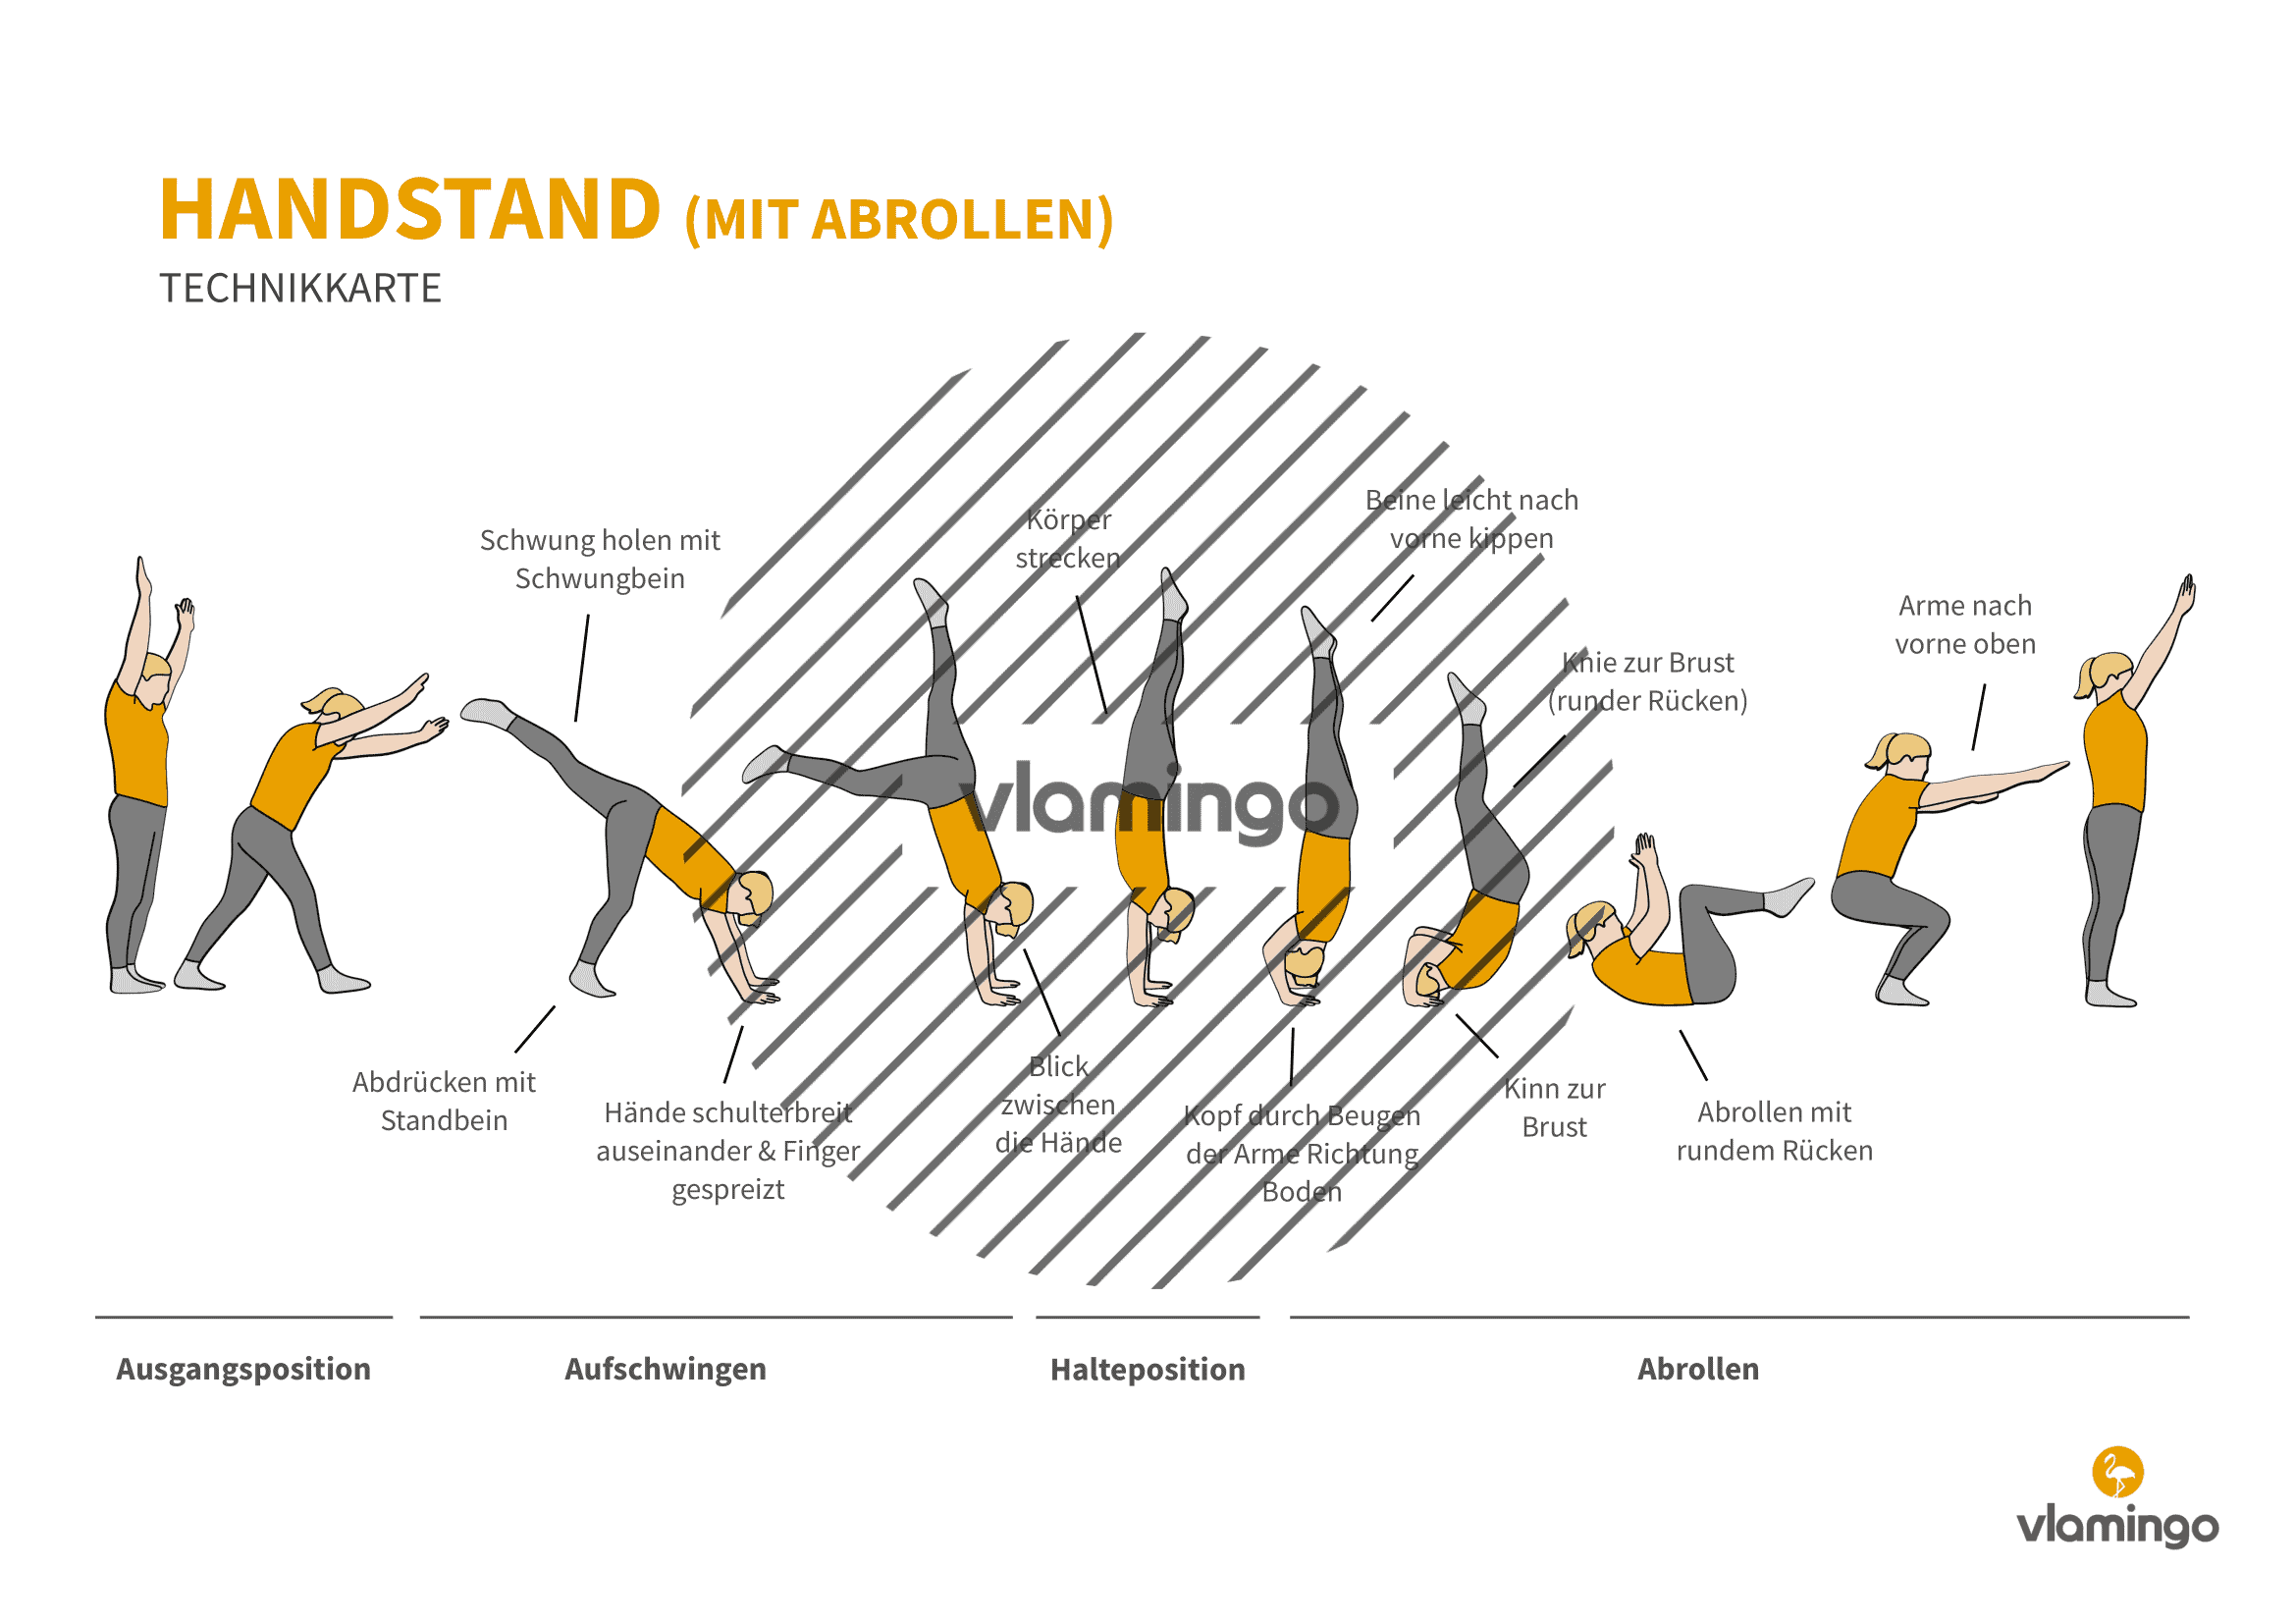 Handstand mit Abrollen - Technikkarte - Bewegungsanalyse